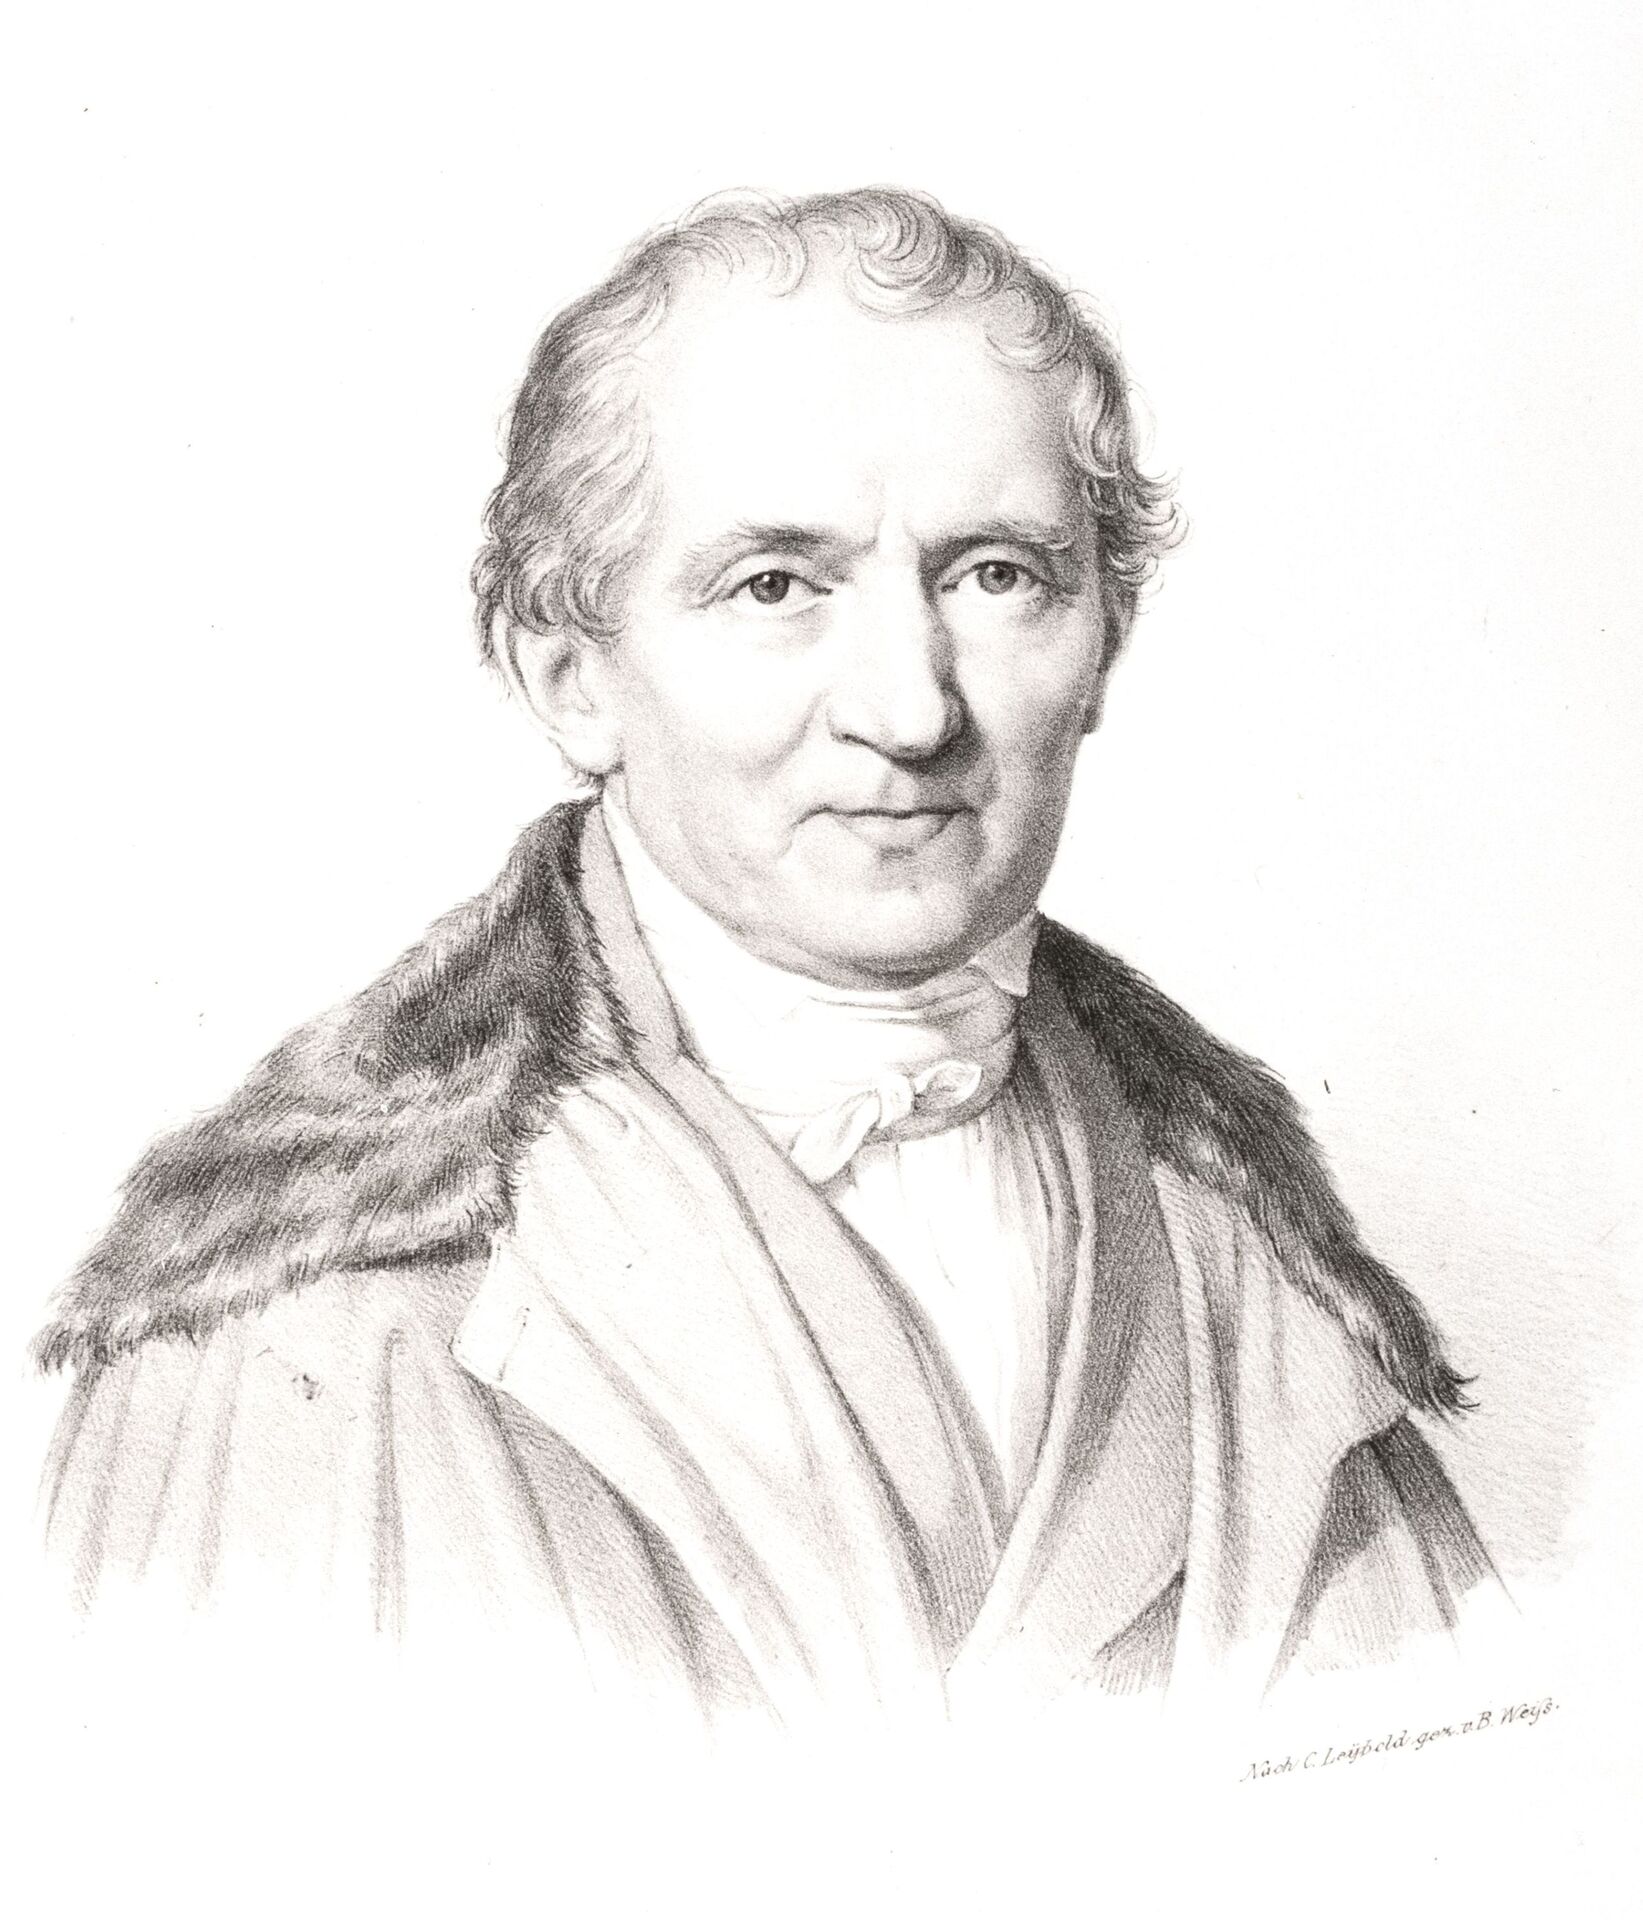 Steinkopf, Johann Friedrich (1771-1852)_nach C. Leybold gez. v. B. Weiss_Besitz ungeklärt.jpg